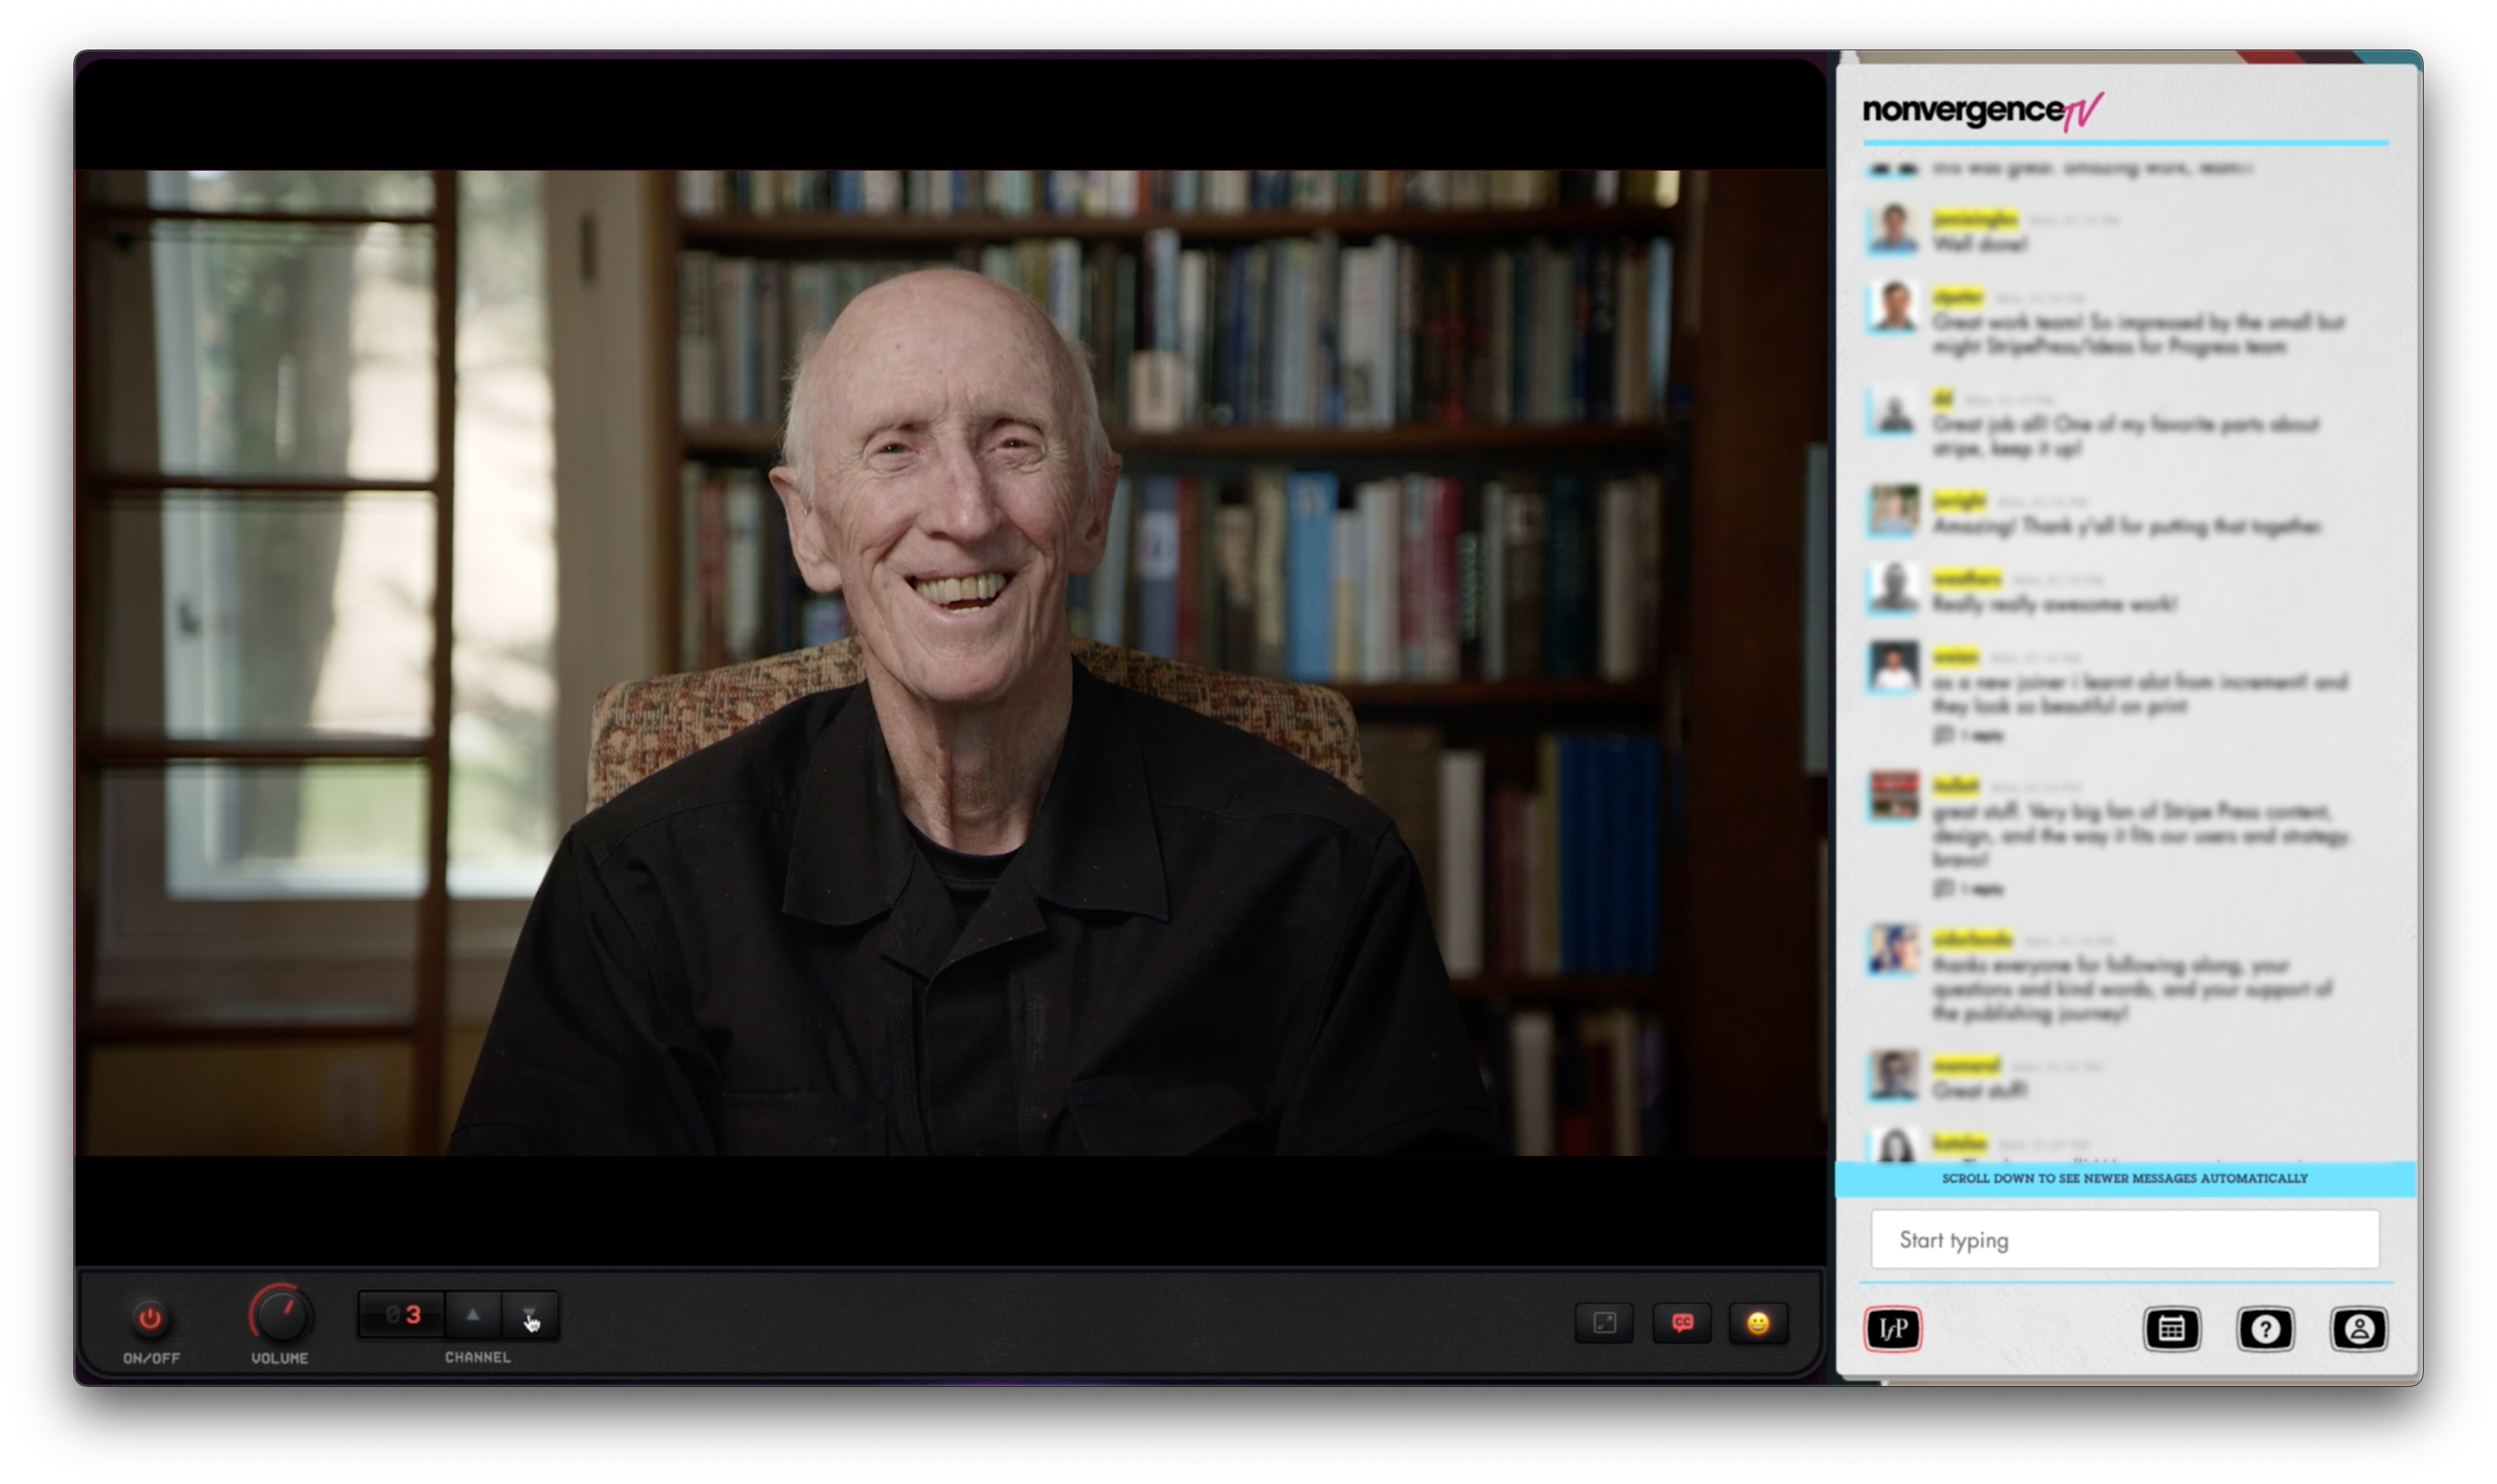 Non-vergence interview with Stewart Brand